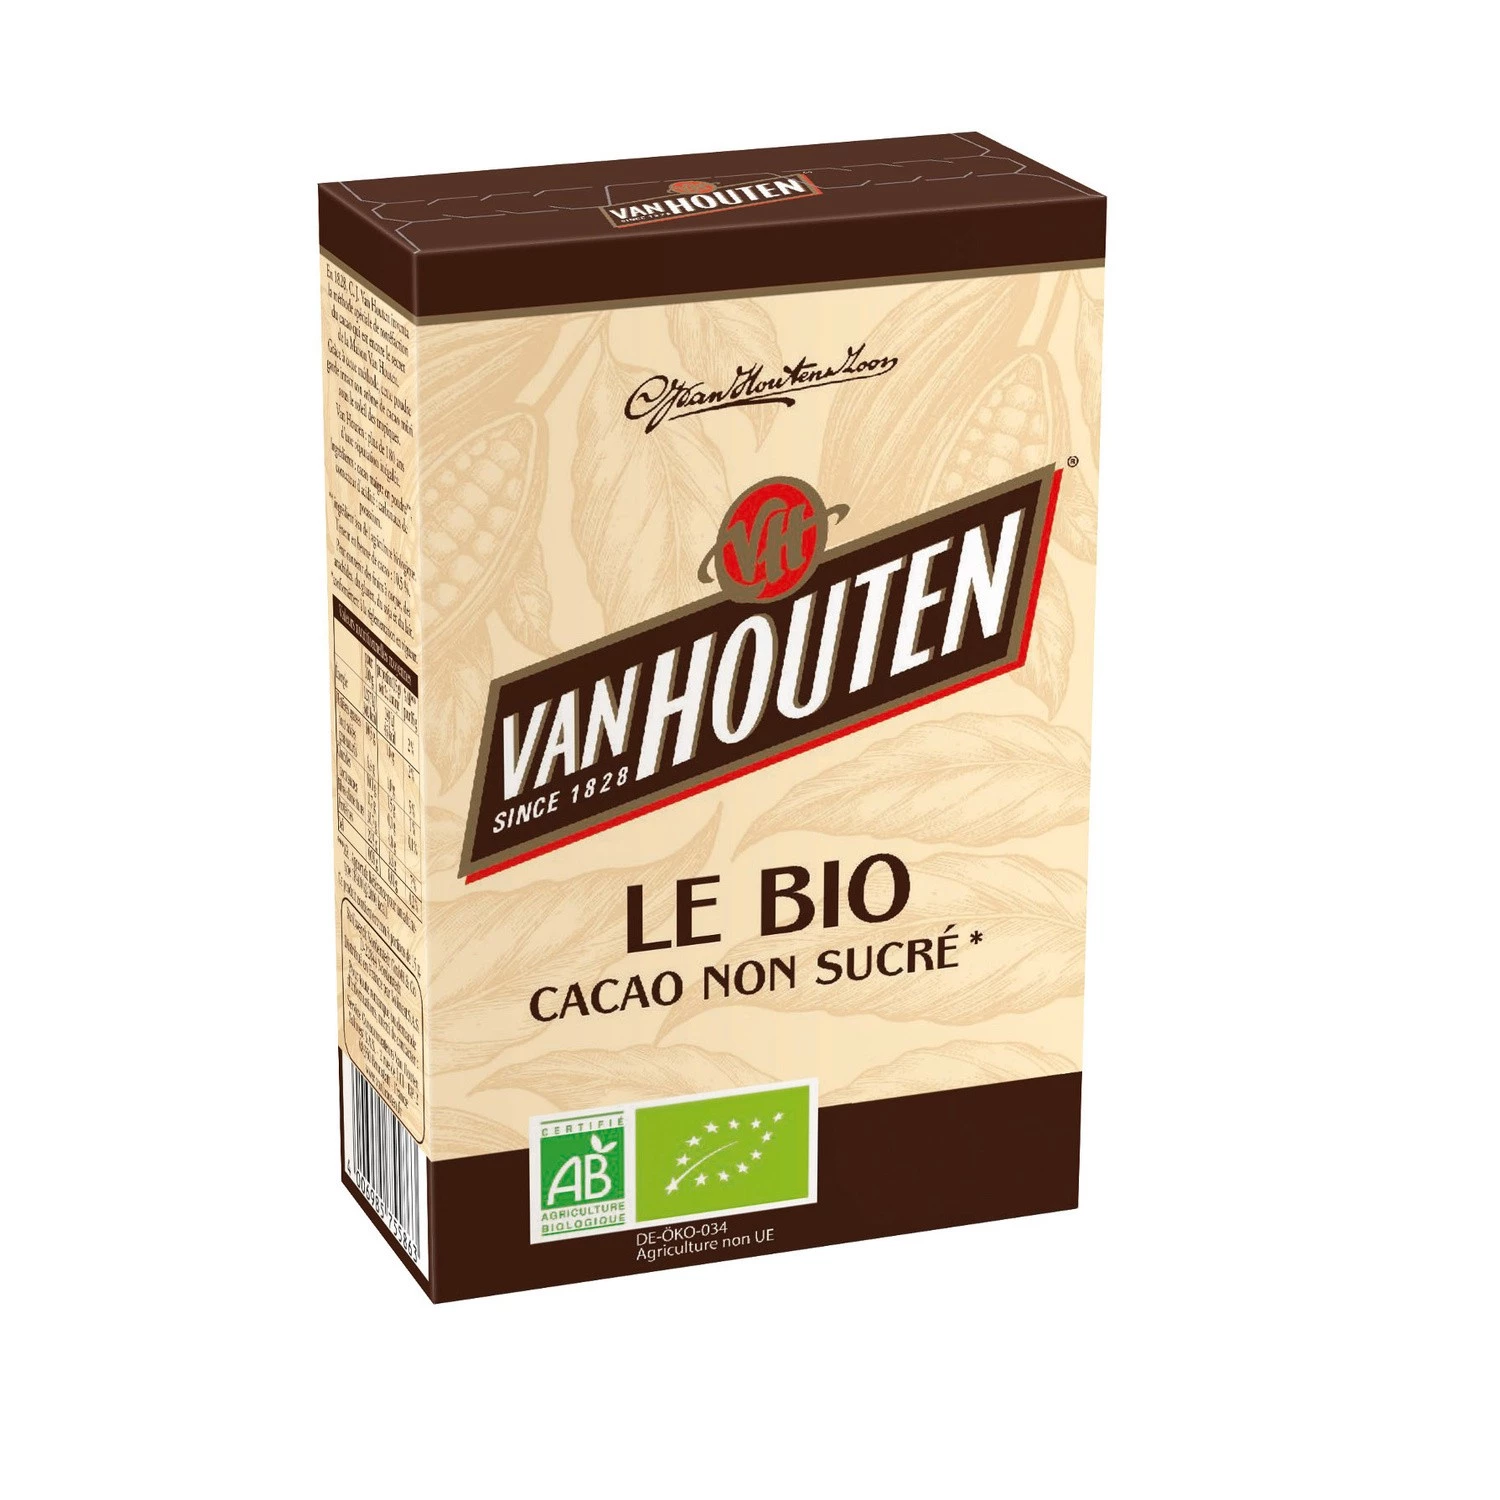 Cacao non sucré Le Bio - 125 g - Van Houten